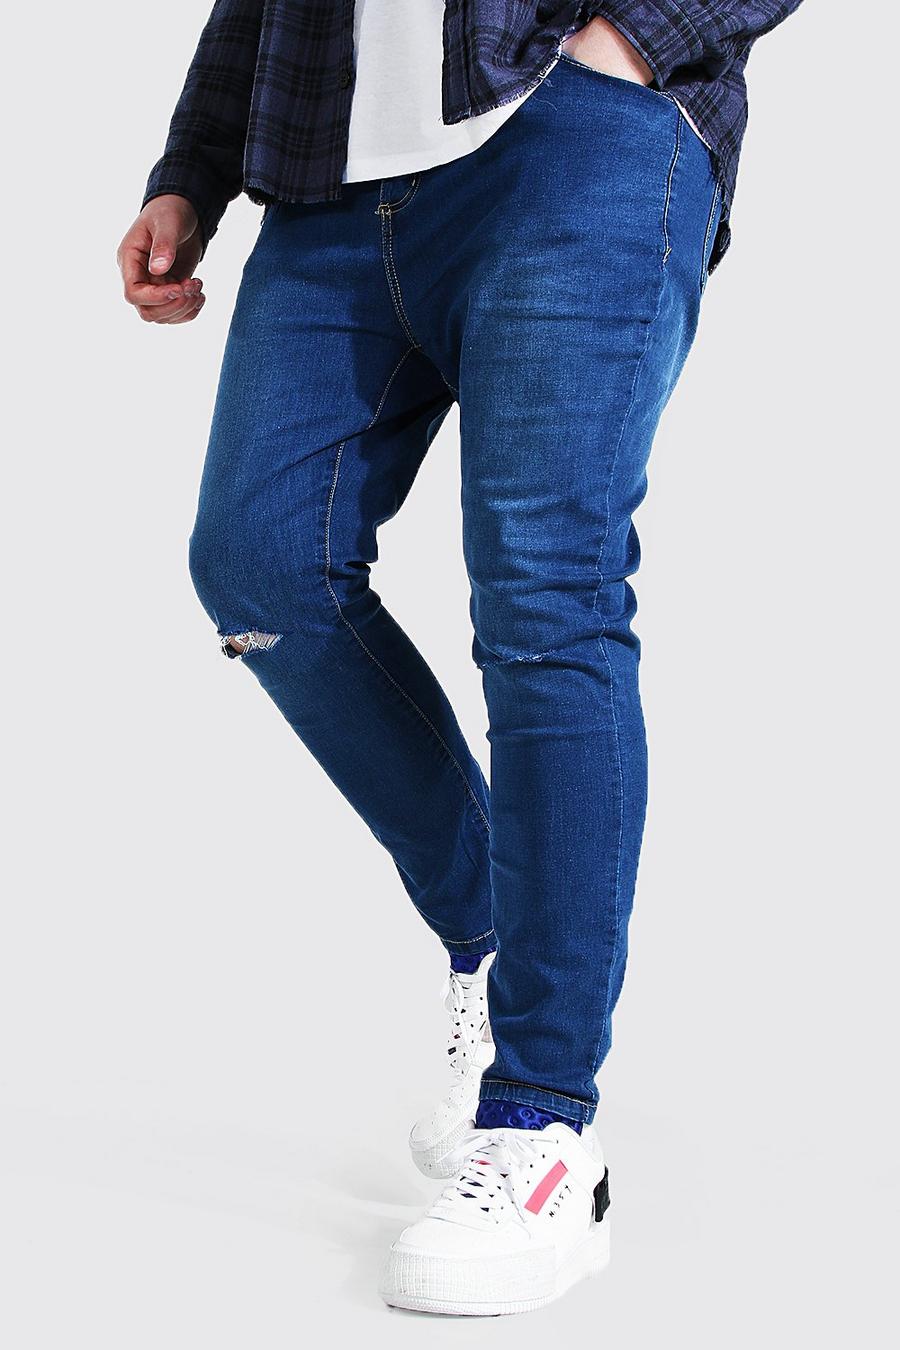 כחול ביניים azzurro סופר סקיני ג'ינס עם חריצים בברכיים לגברים גדולים וגבוהים image number 1